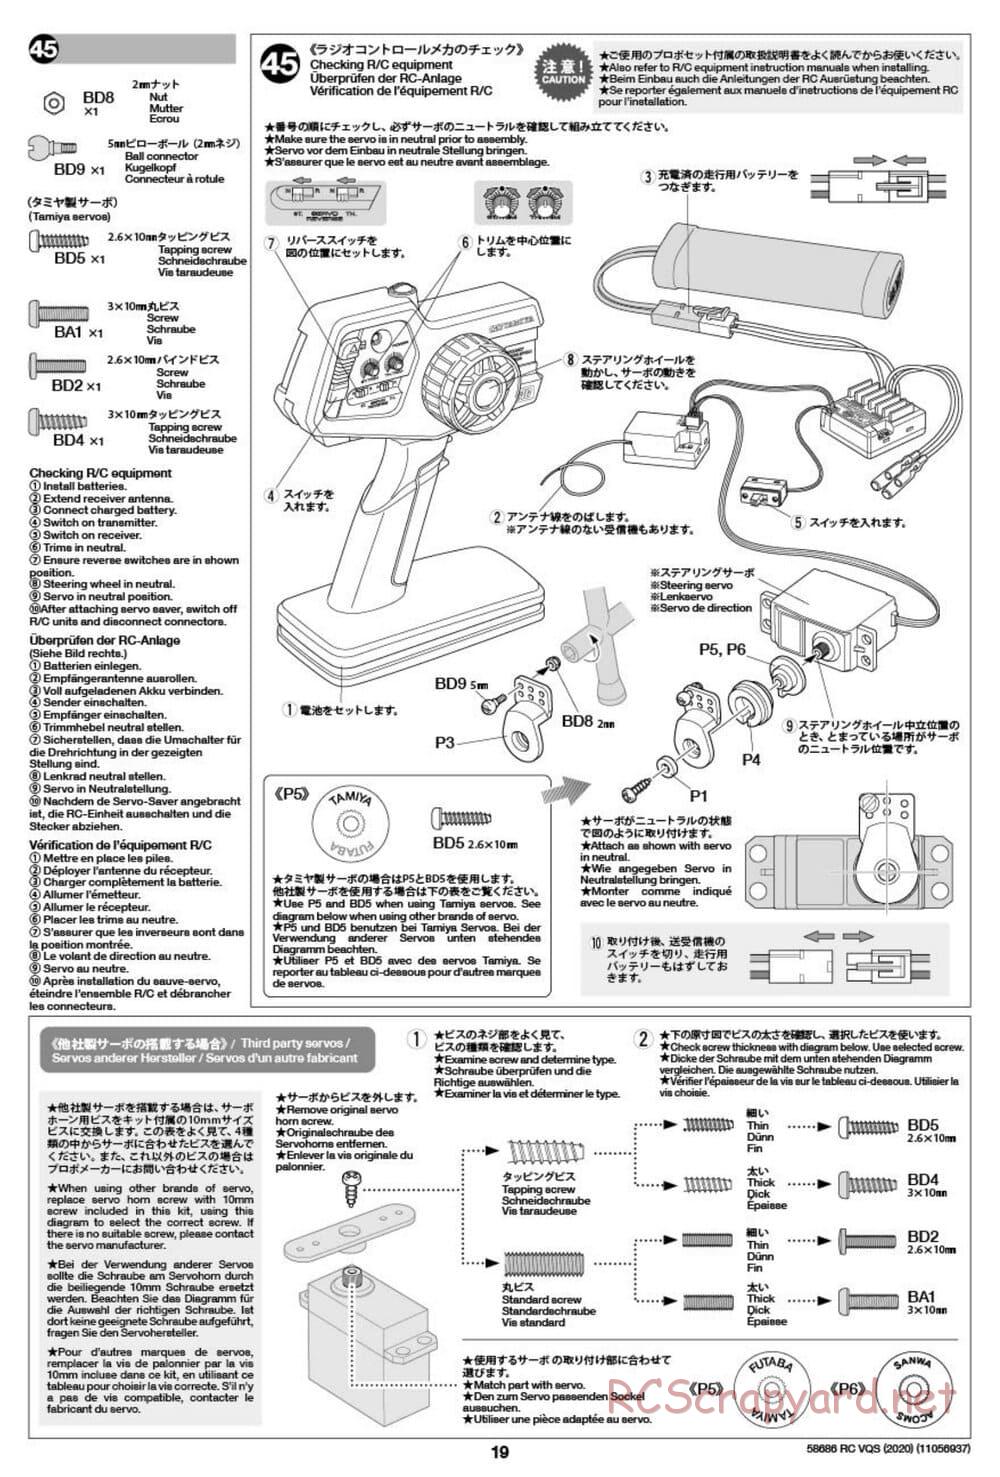 Tamiya - VQS (2020) - AV Chassis - Manual - Page 19